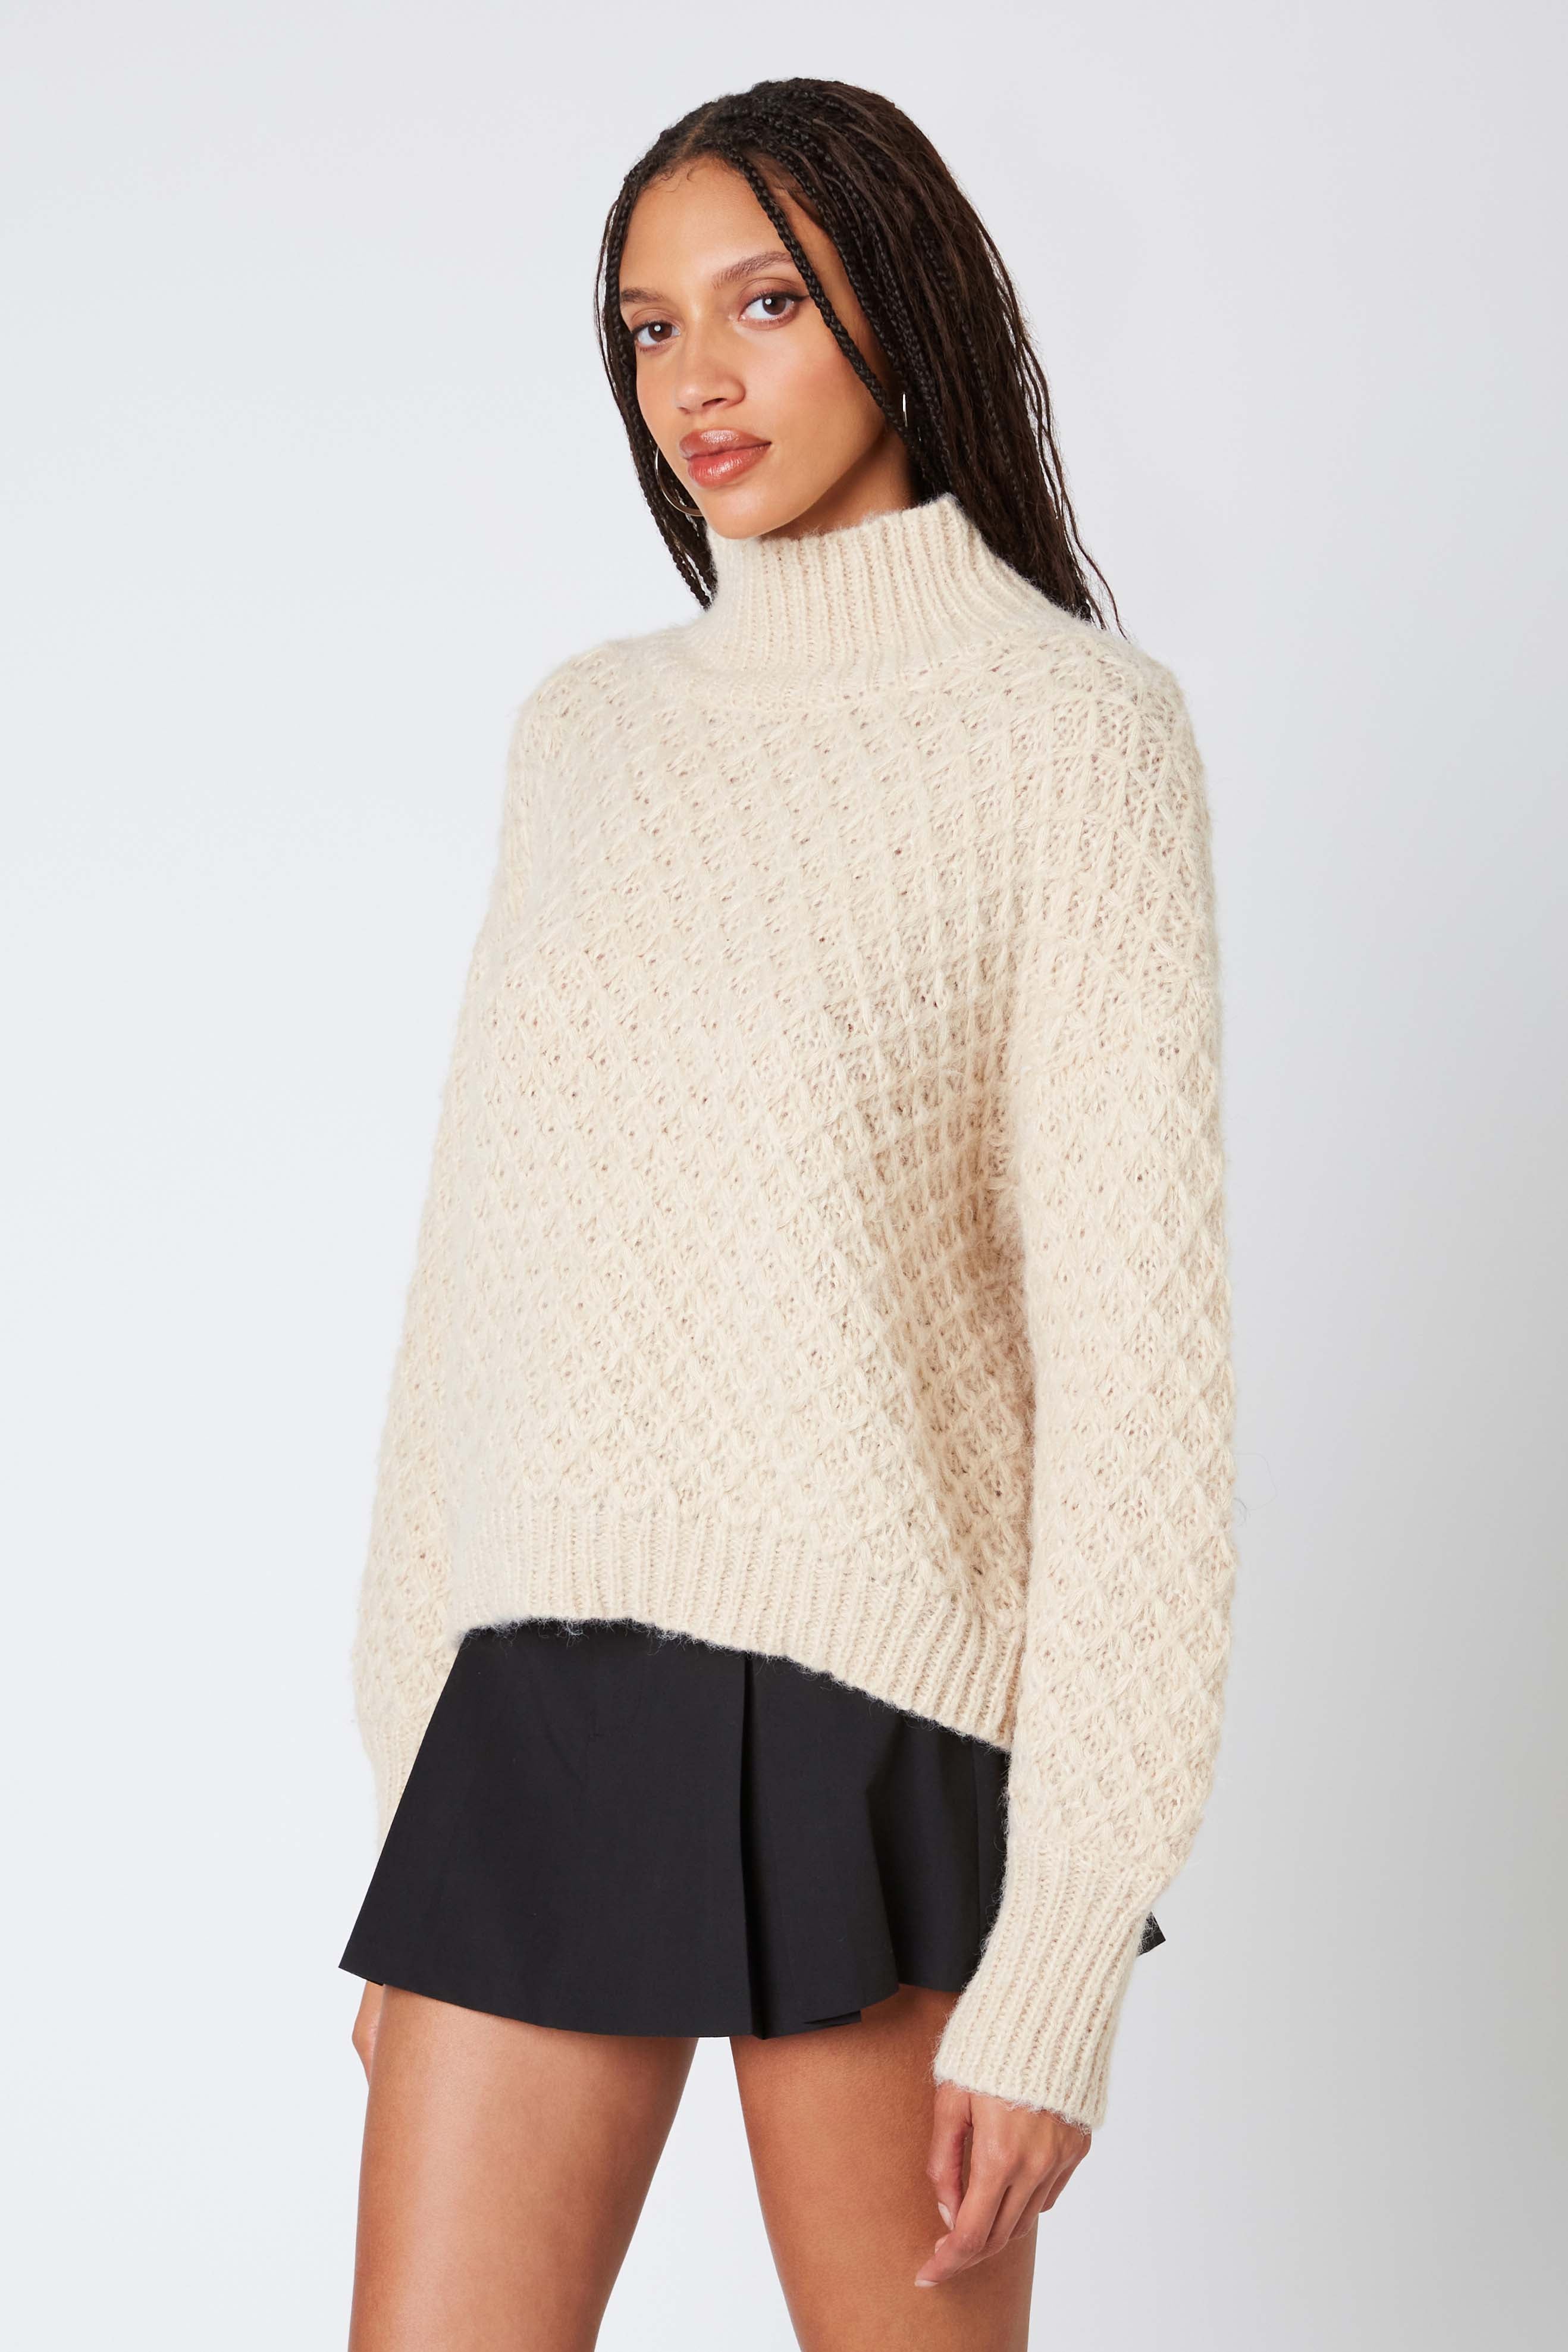 Knit Mockneck Sweater in Ecru Side View